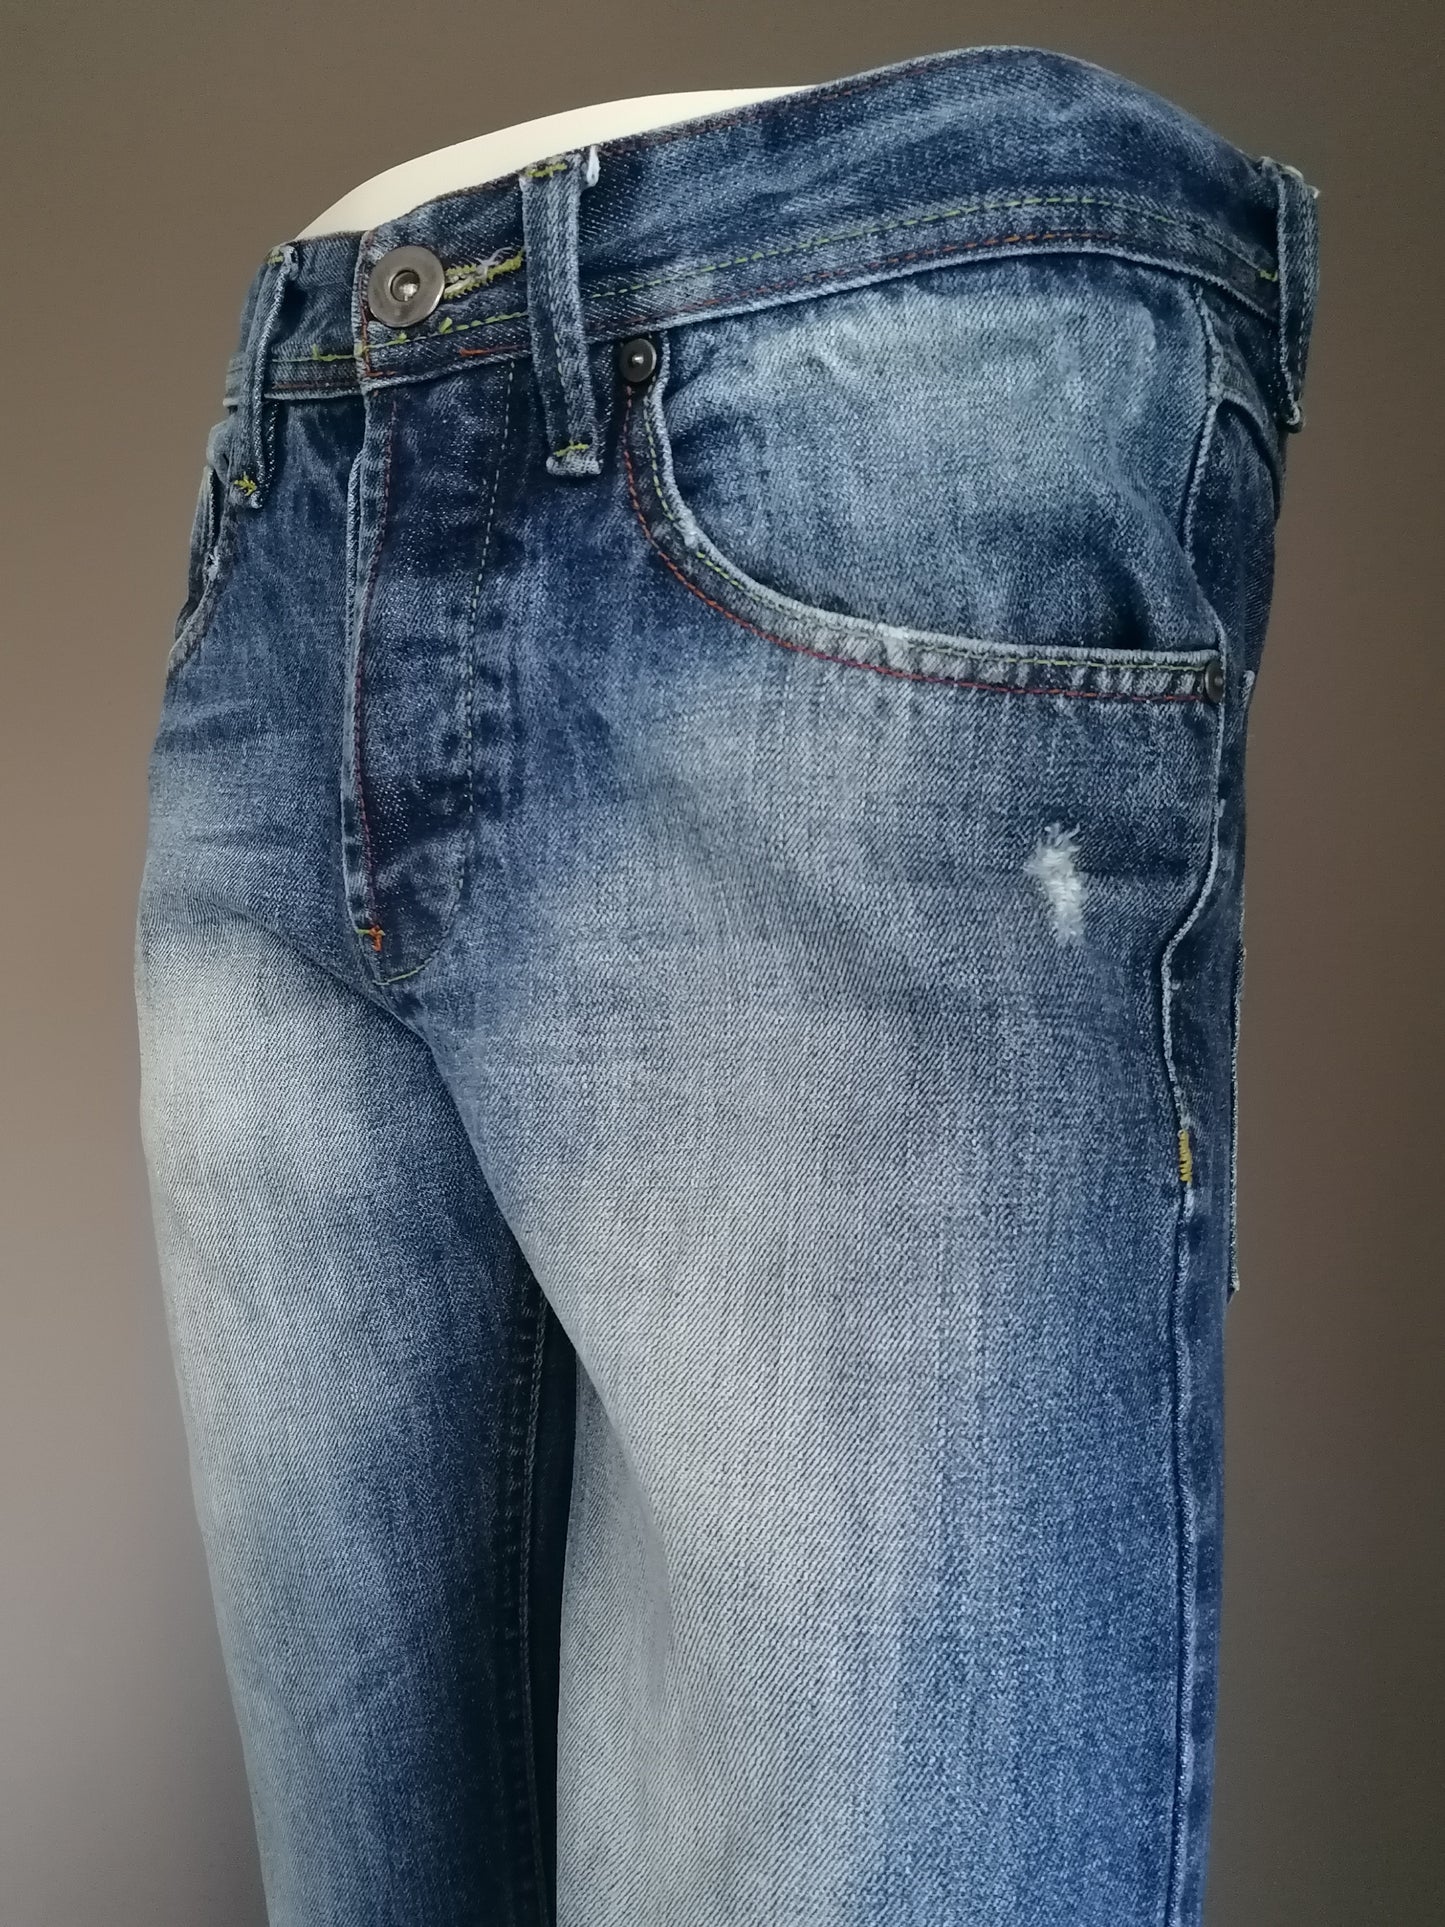 New Look Jeans. Colorato blu. Taglia W30 - L30. Gamba dritta.